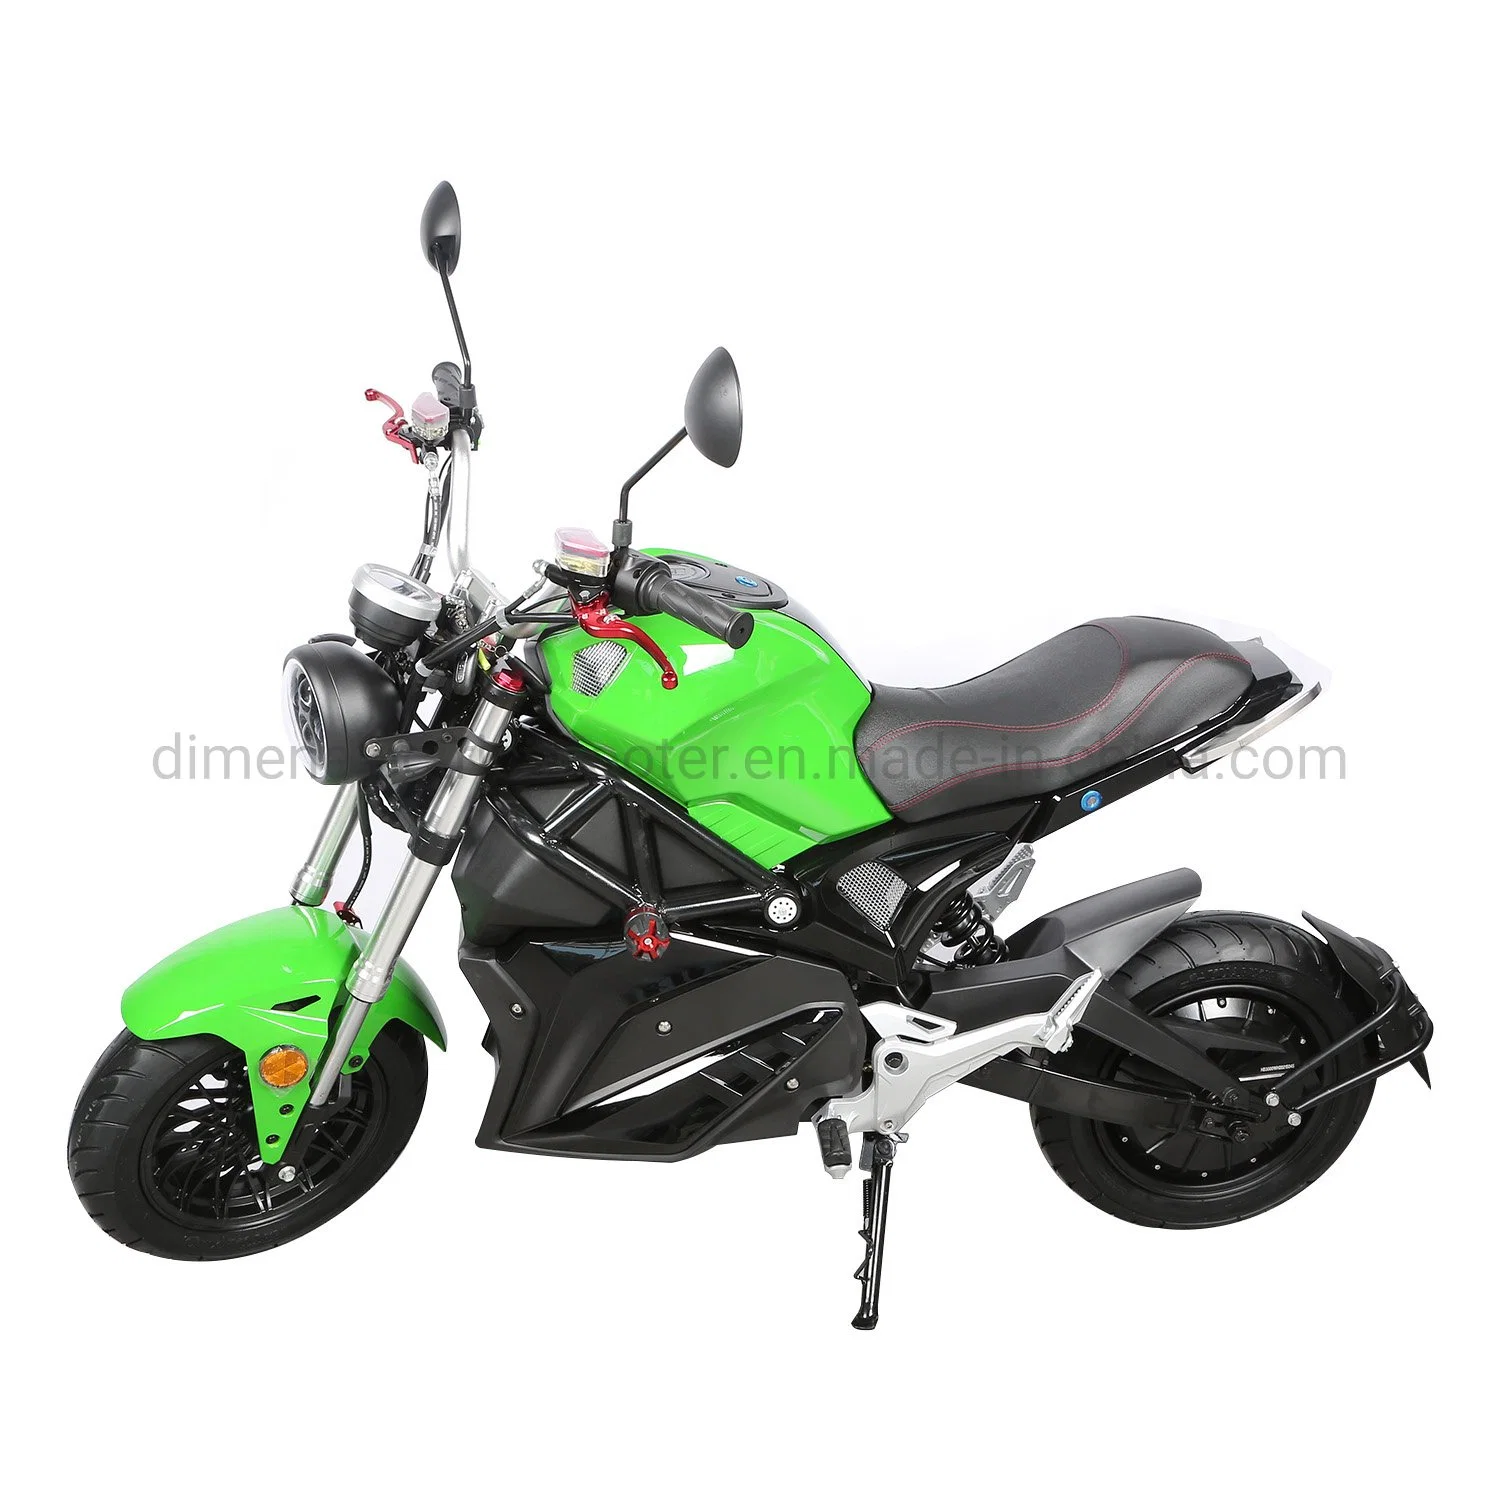 Дешевые цены спорта электрический мопед мотоцикл скутер хороший дизайн торговых марок для изготовителей оборудования для взрослых мотоциклов с электроприводом